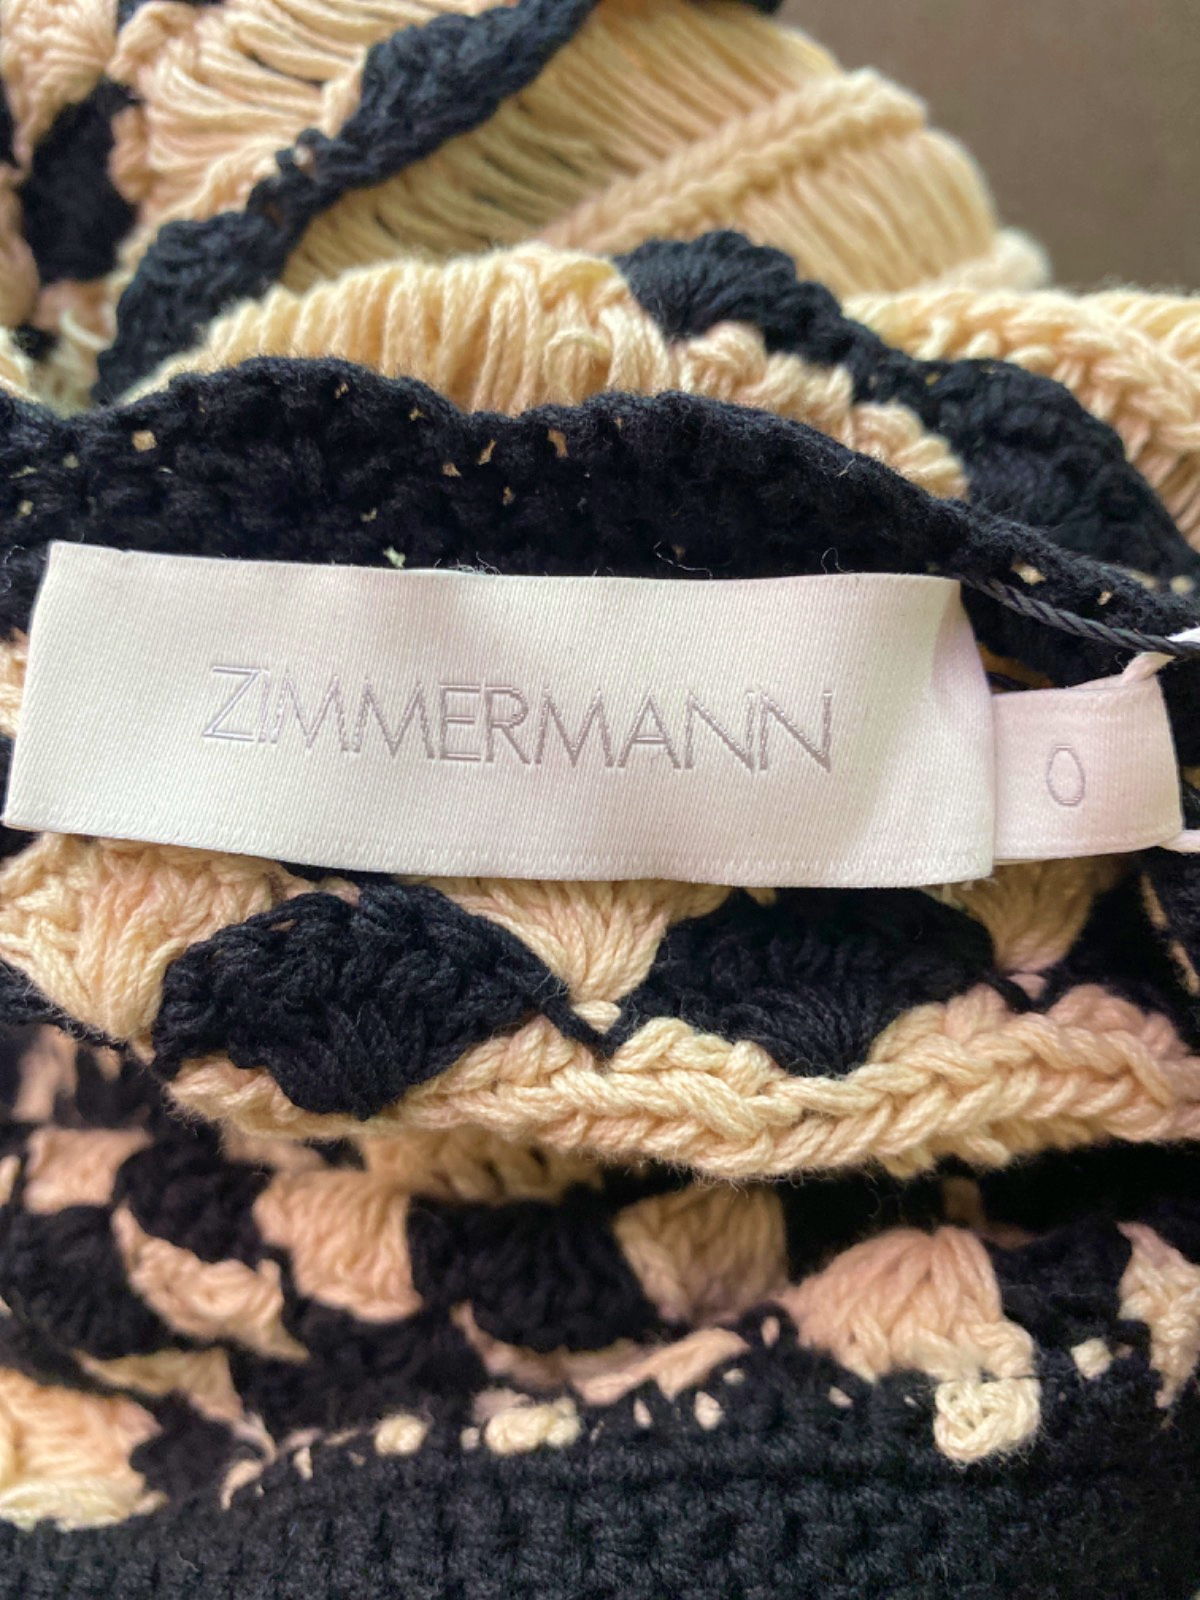 Zimmermann Black/Cream Anneke Crochet Halter Tank UK 8